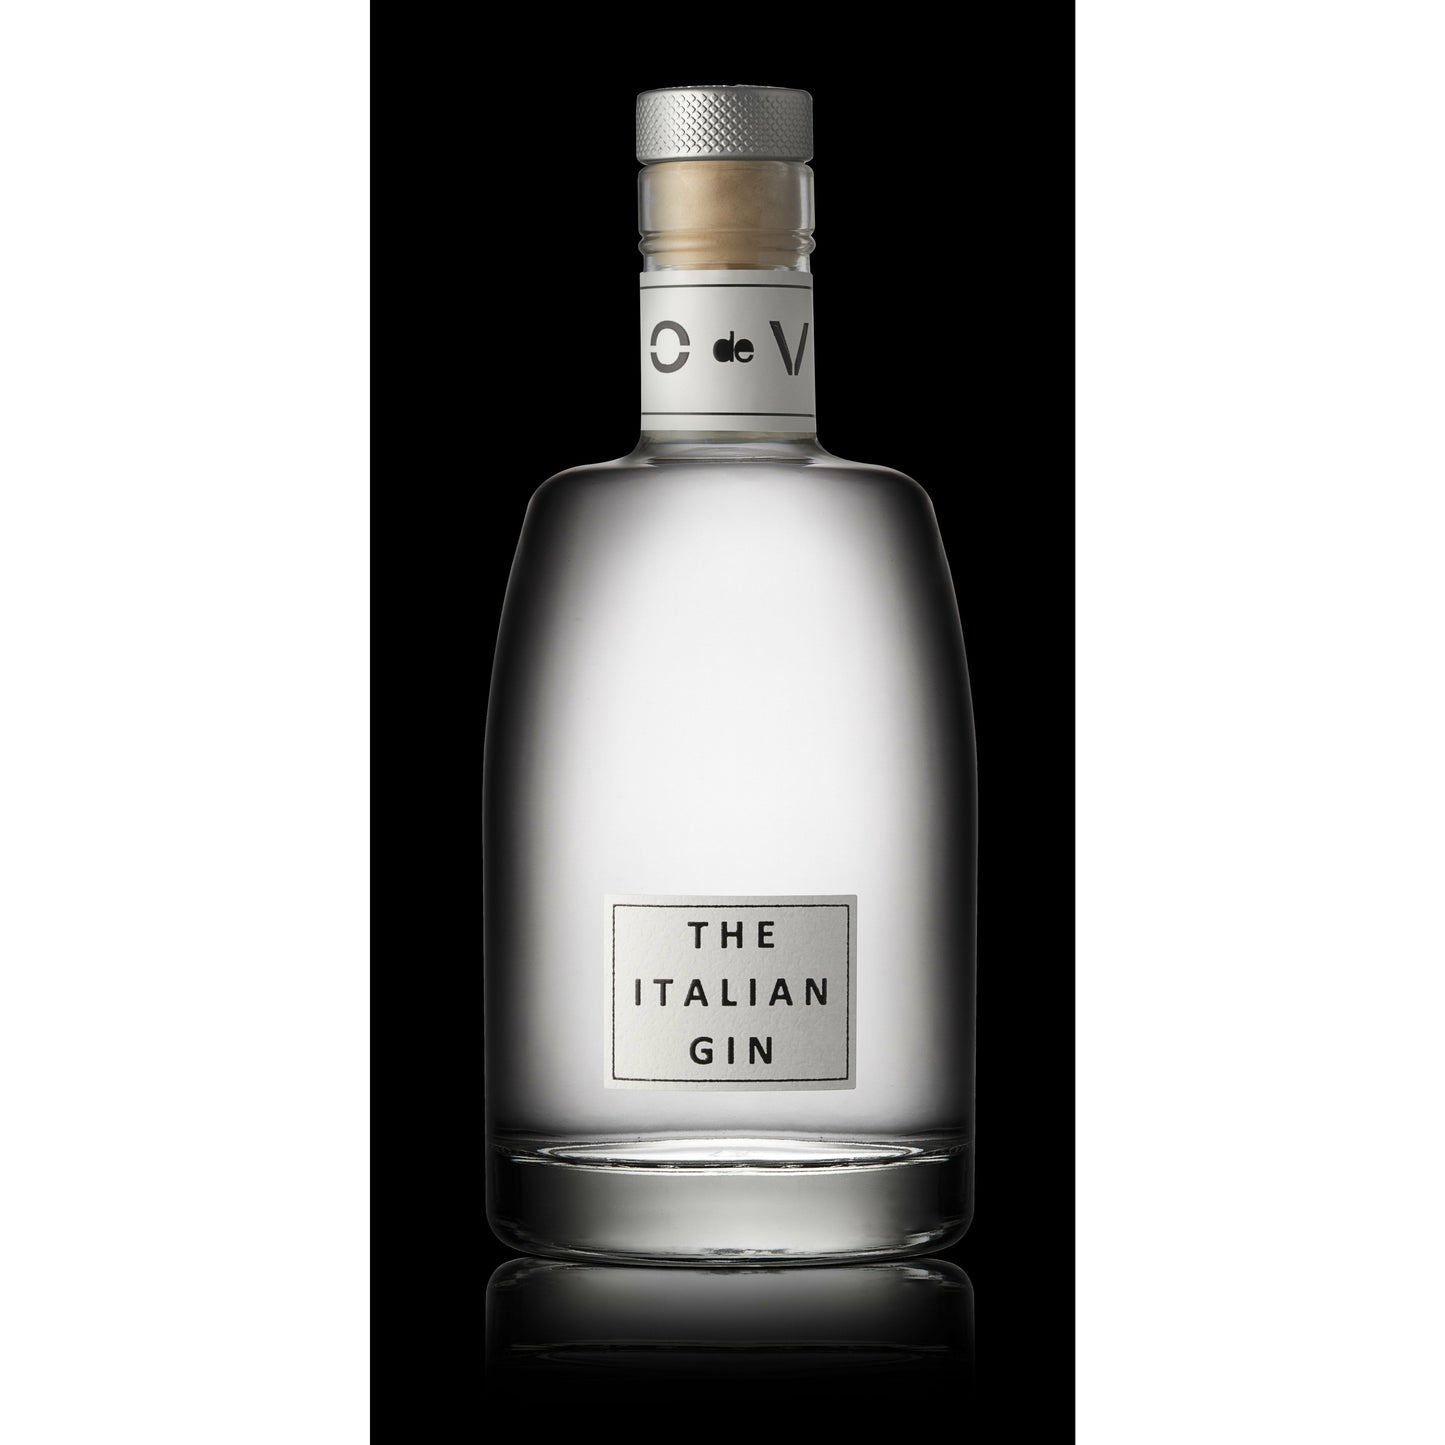 O de V - The Italian Gin - White, 0,20cl (Ohne Karton)